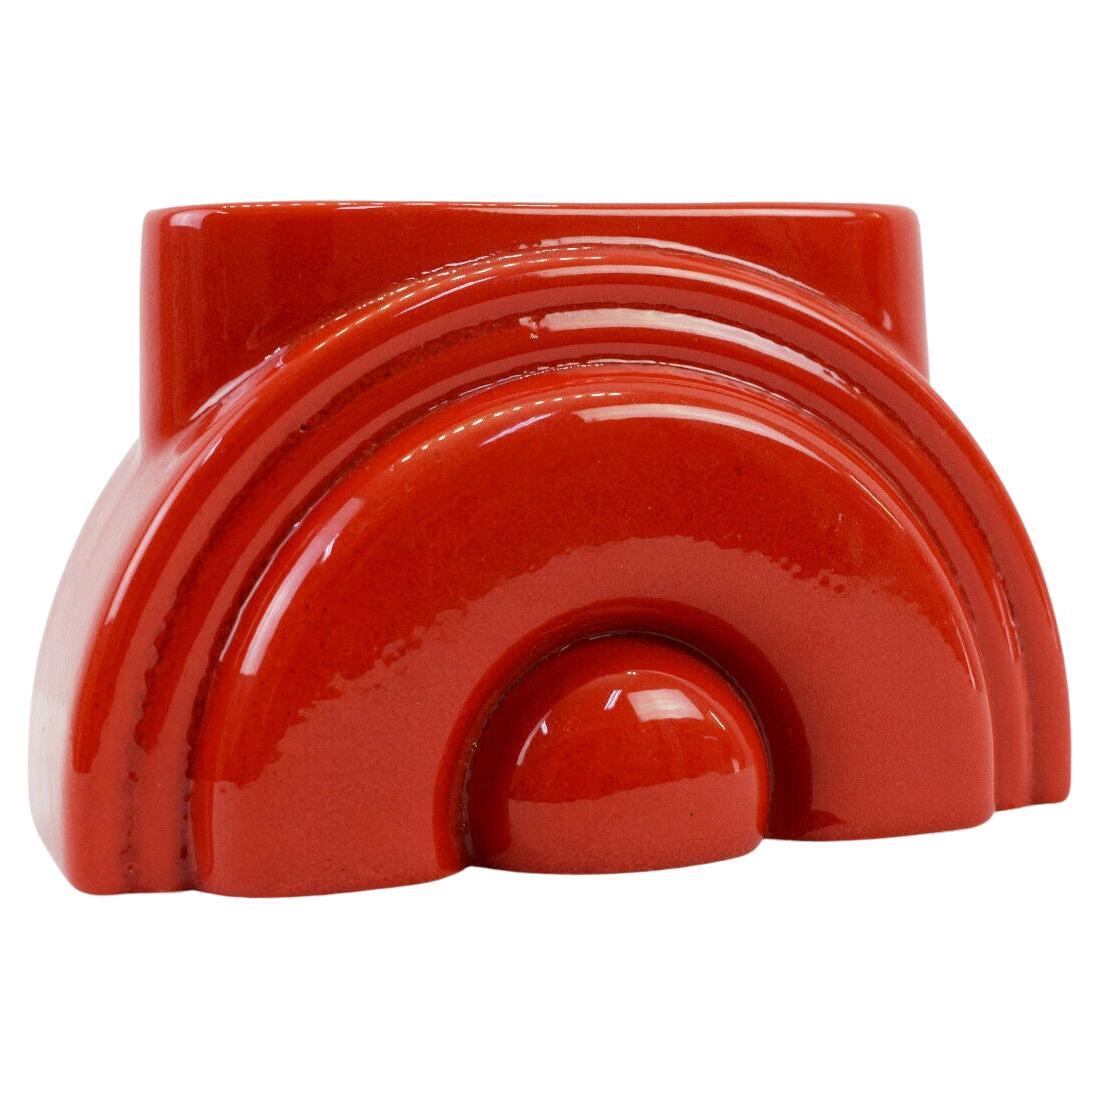 Vase moderne Pierre Cardin en porcelaine rouge Franco Pozzi Ceramica, 1970, Italie. Superbe pièce moderne. Un arc-en-ciel rouge ou un soleil levant, signé. Franco Pozzi Ceramica pour Pierre Cardin, vers 1970.